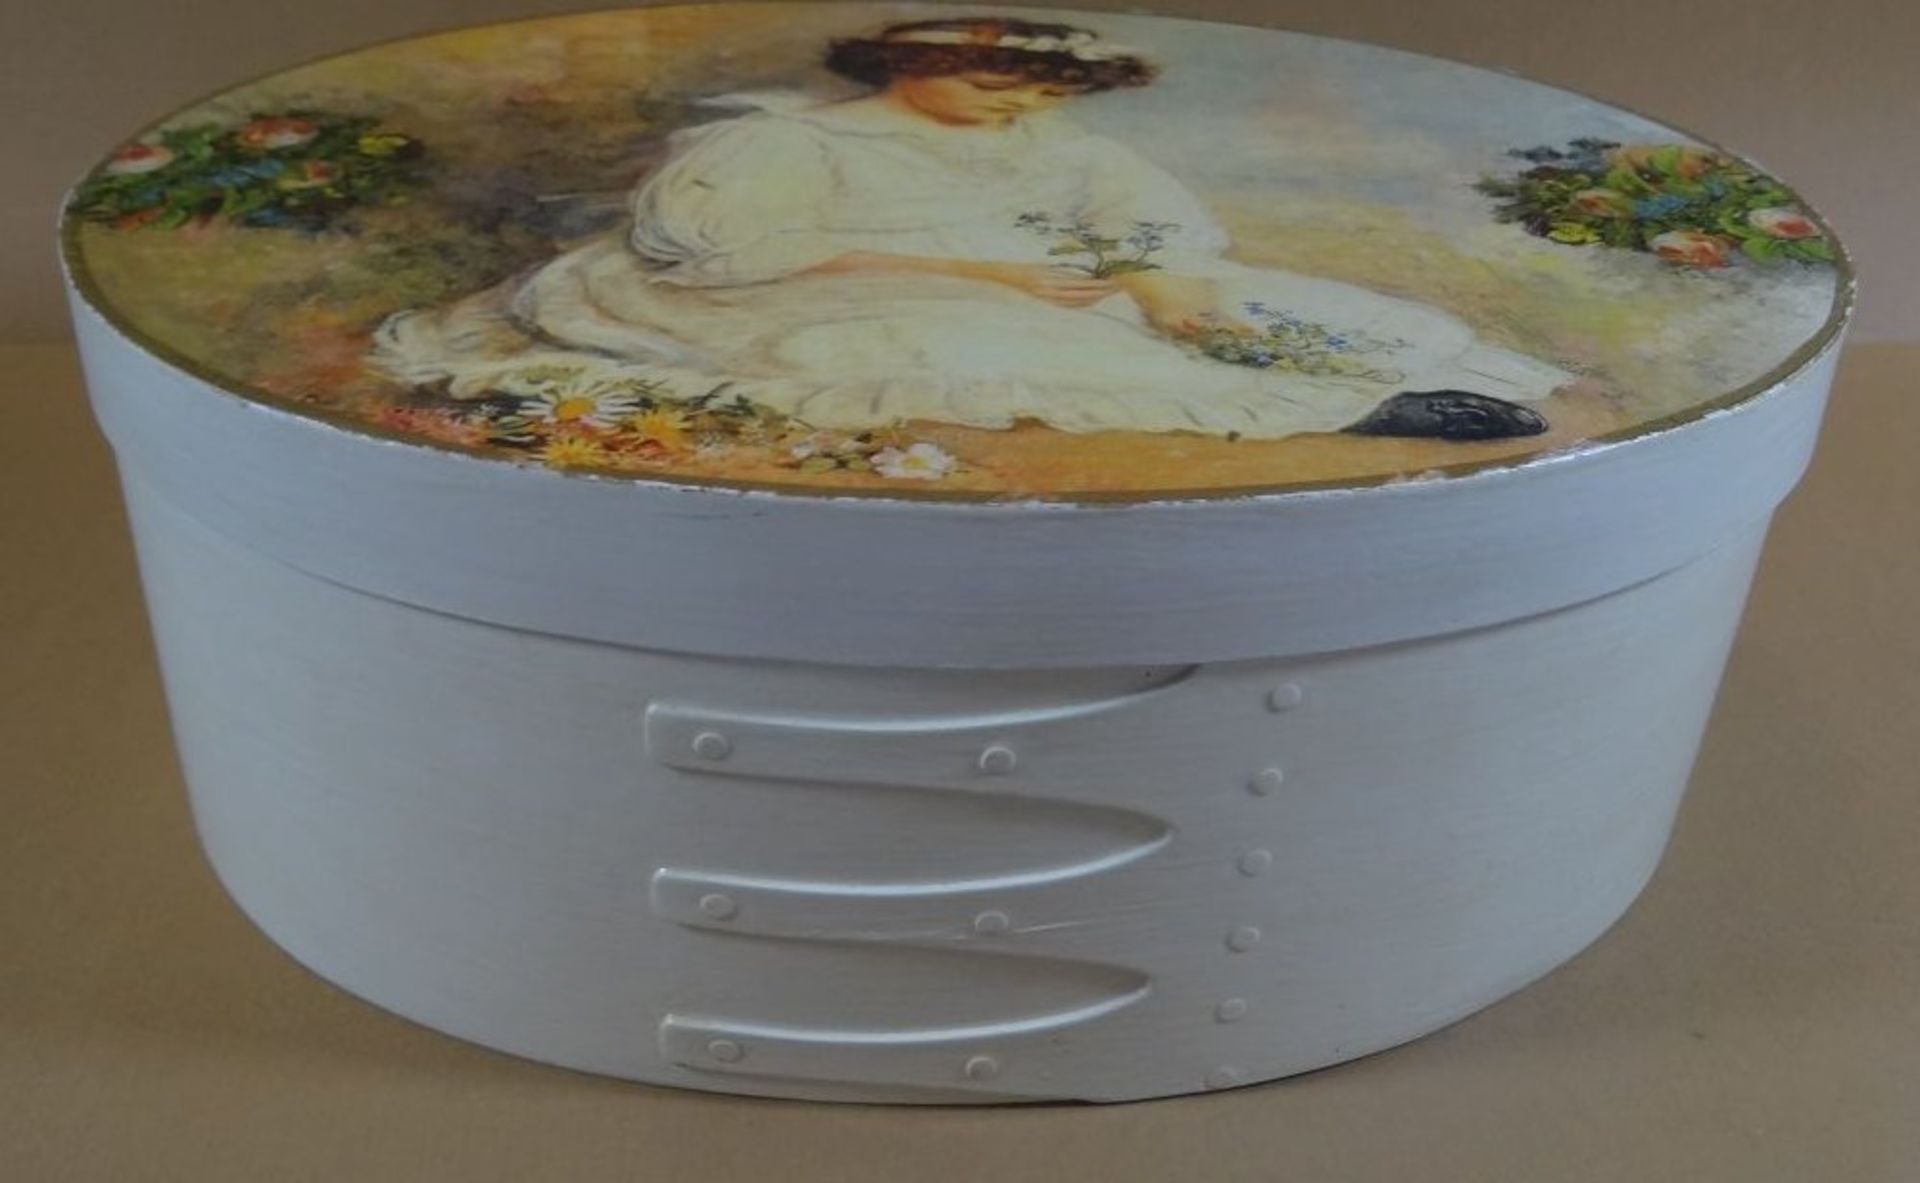 ovale Dose (10x18x25 cm) gefüllt mit Puppenkleidung, grossteils handgestrickt - Bild 7 aus 10